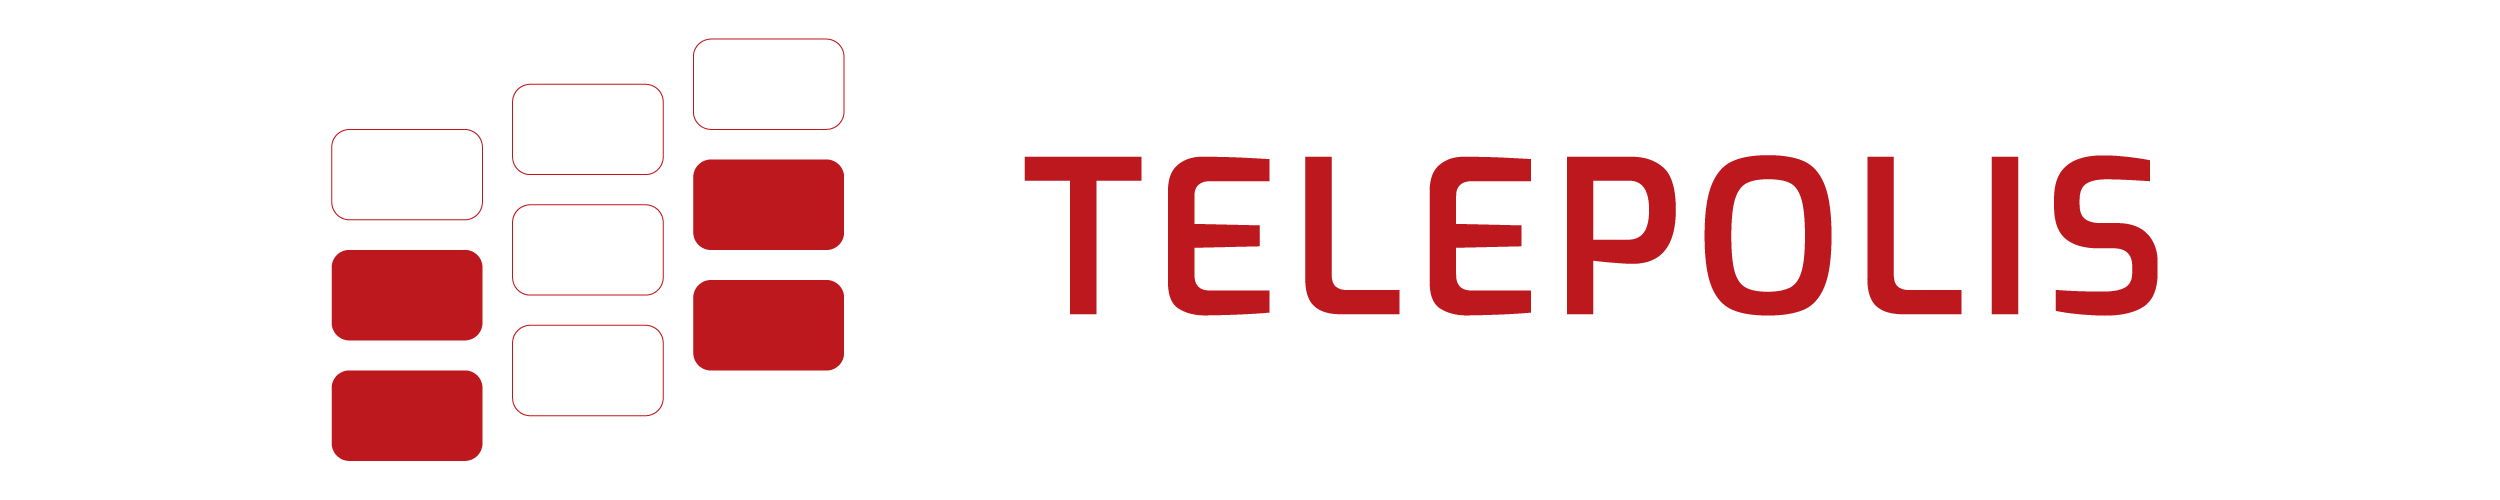 telepolis logo